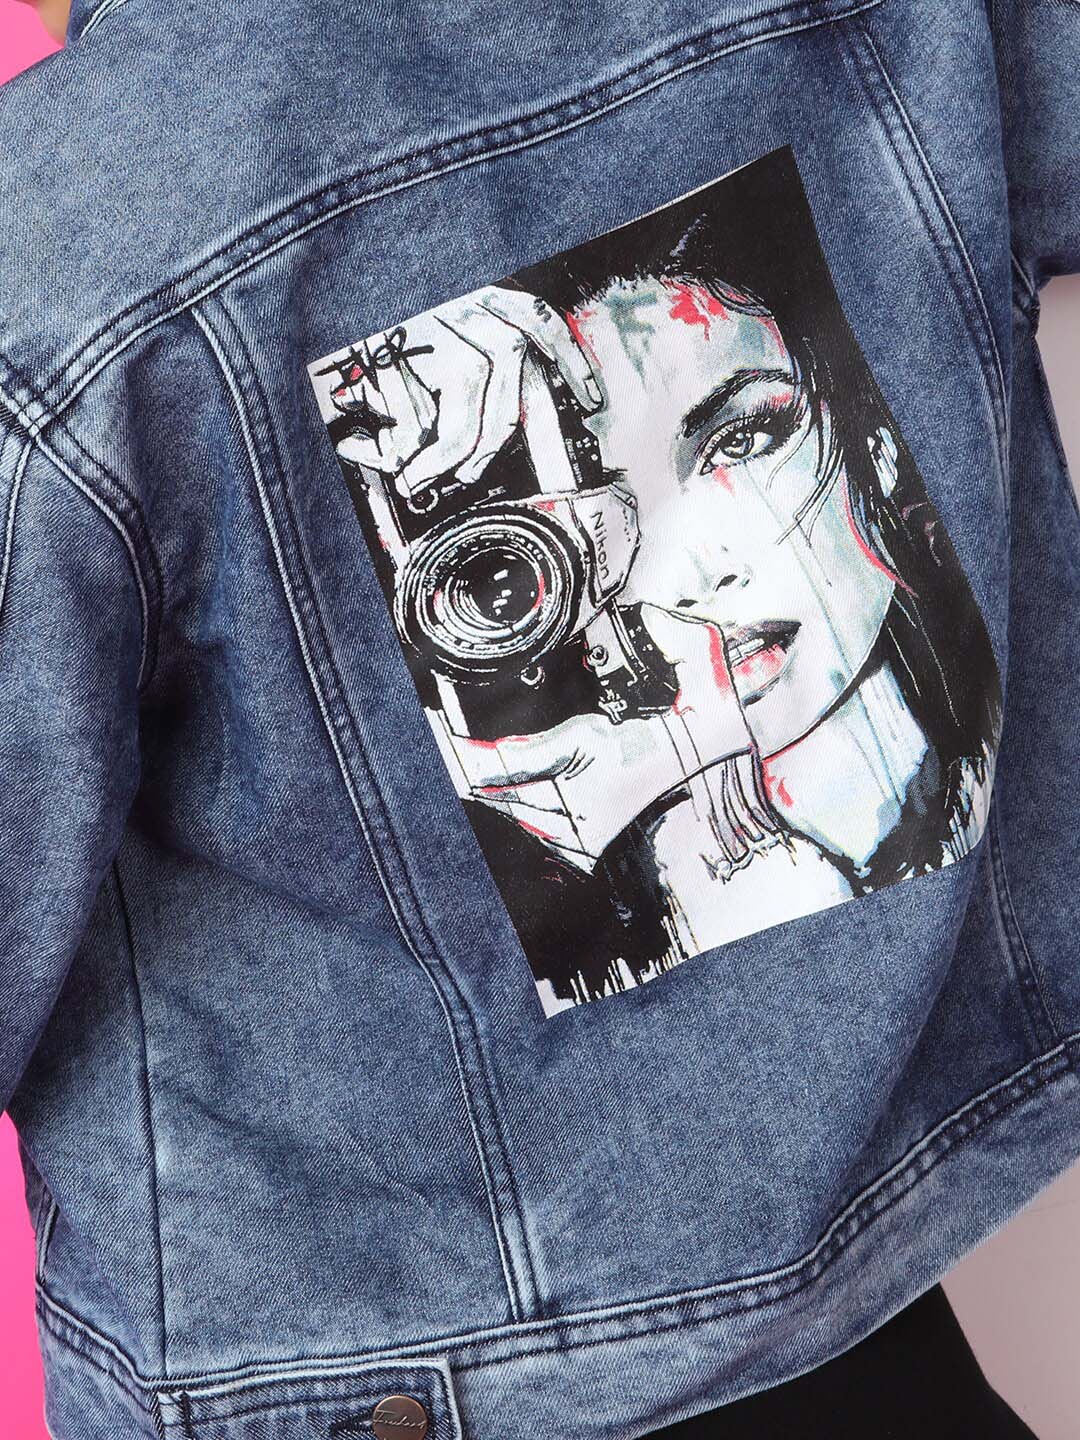 Shop Women Back Printed Denim Jacket Online.